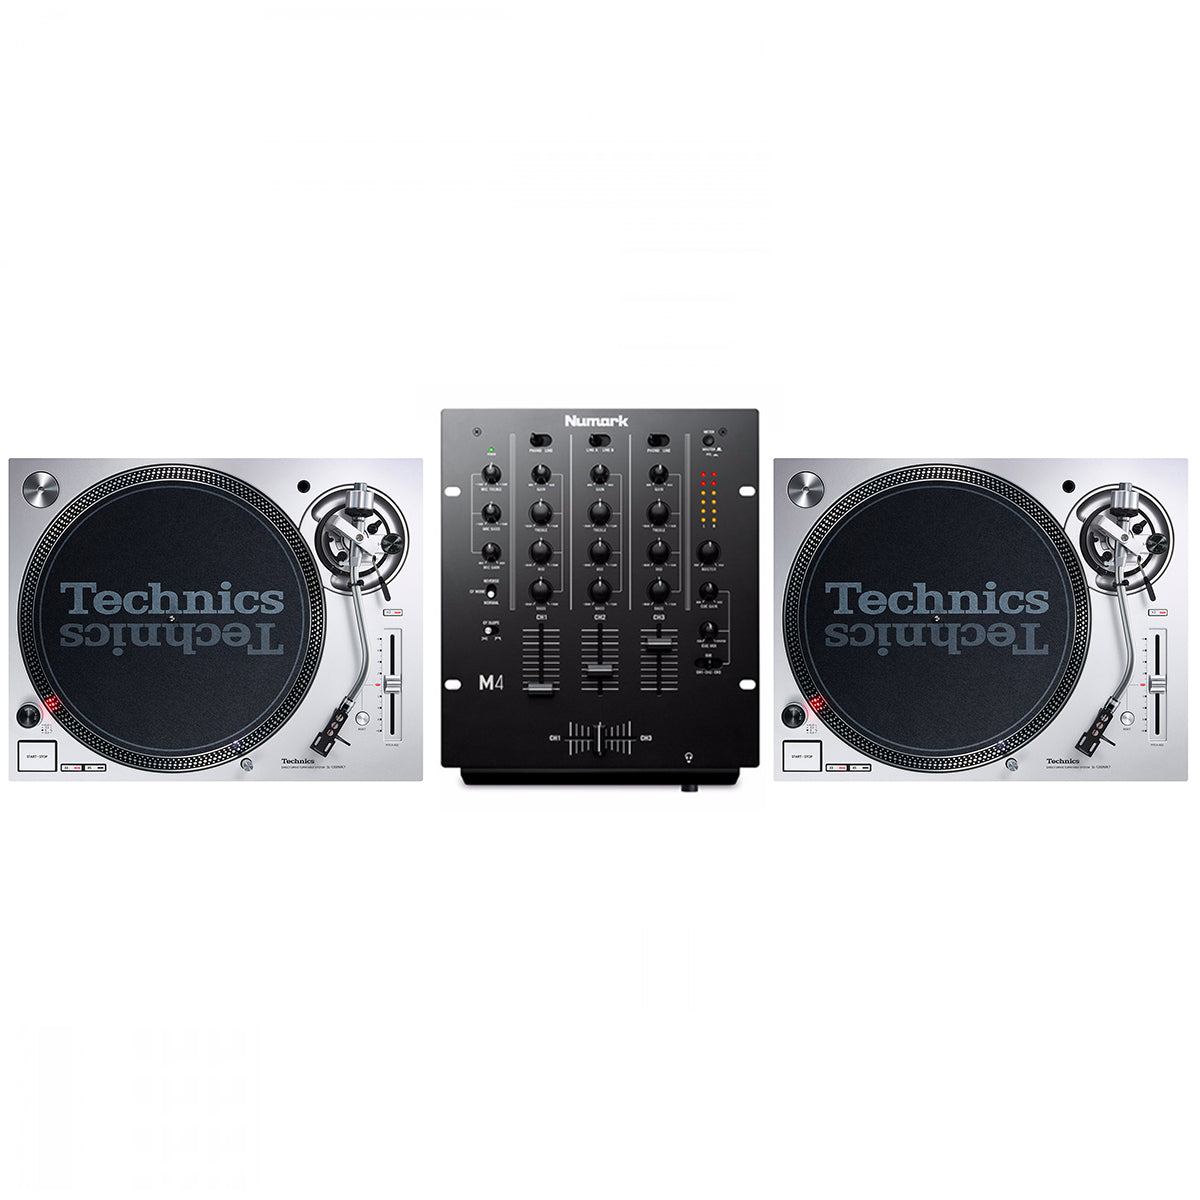 Technics SL1200 MK7 + Numark M4 Mixer